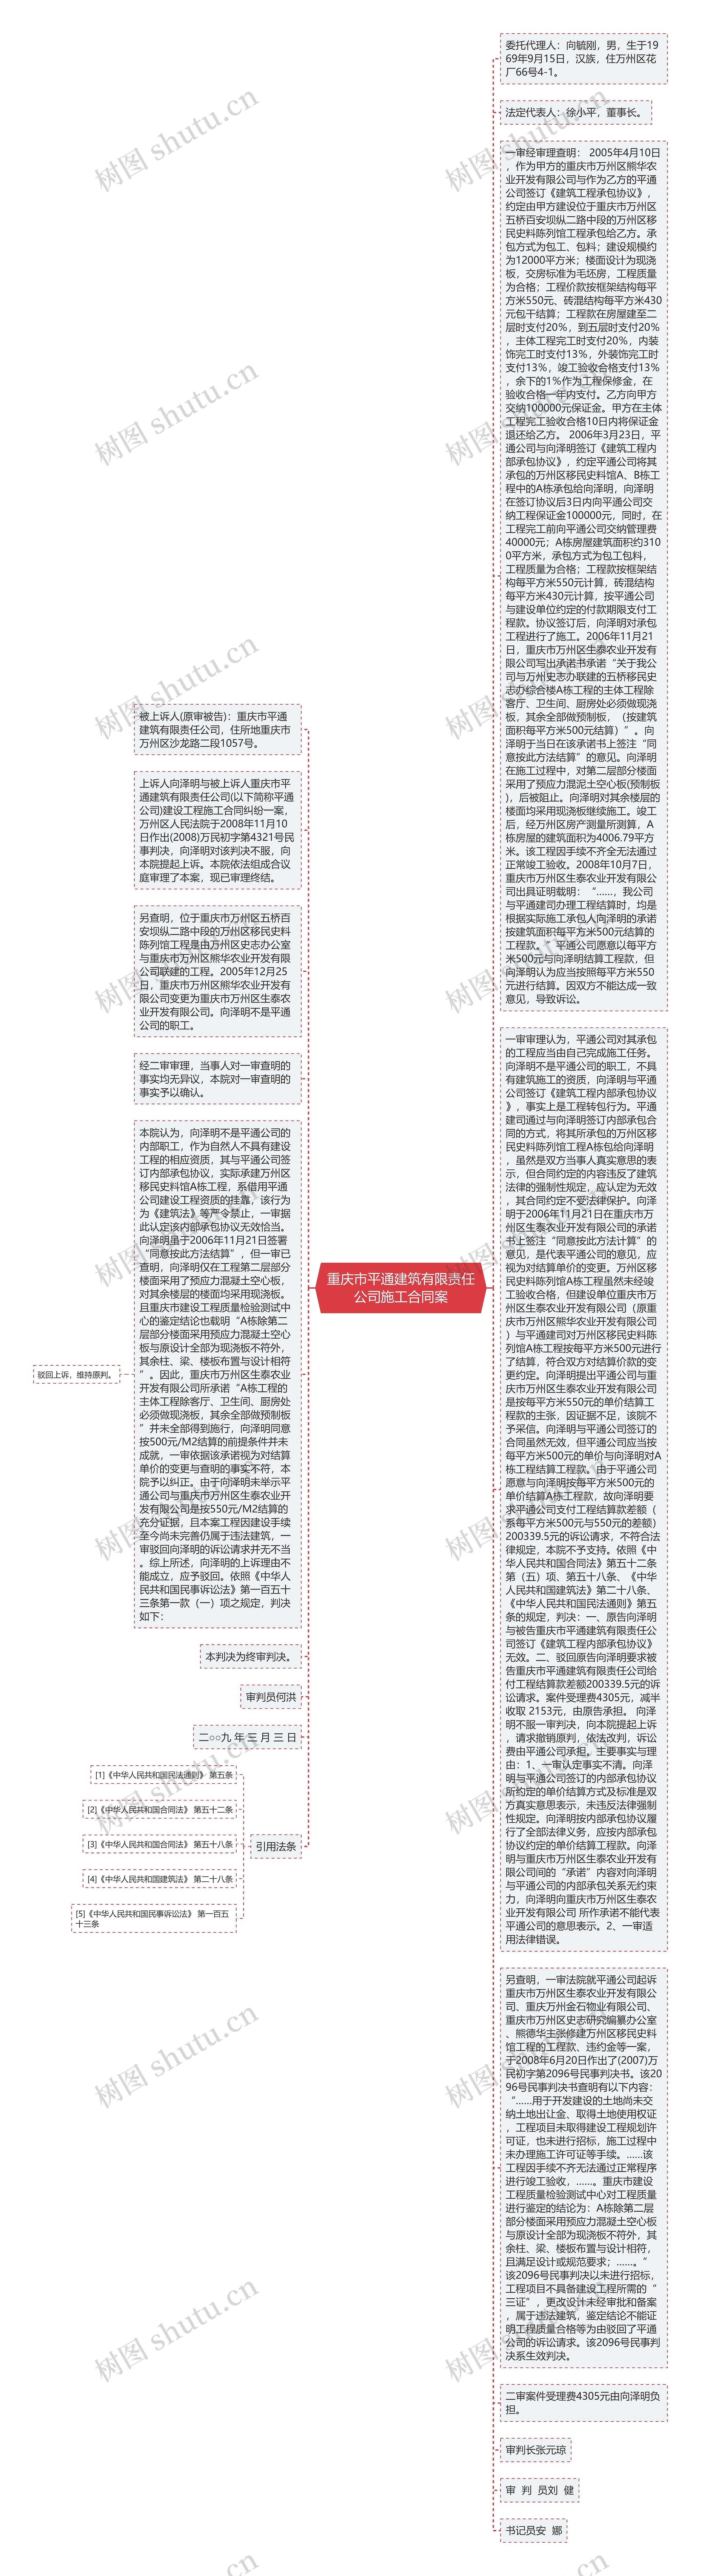 重庆市平通建筑有限责任公司施工合同案